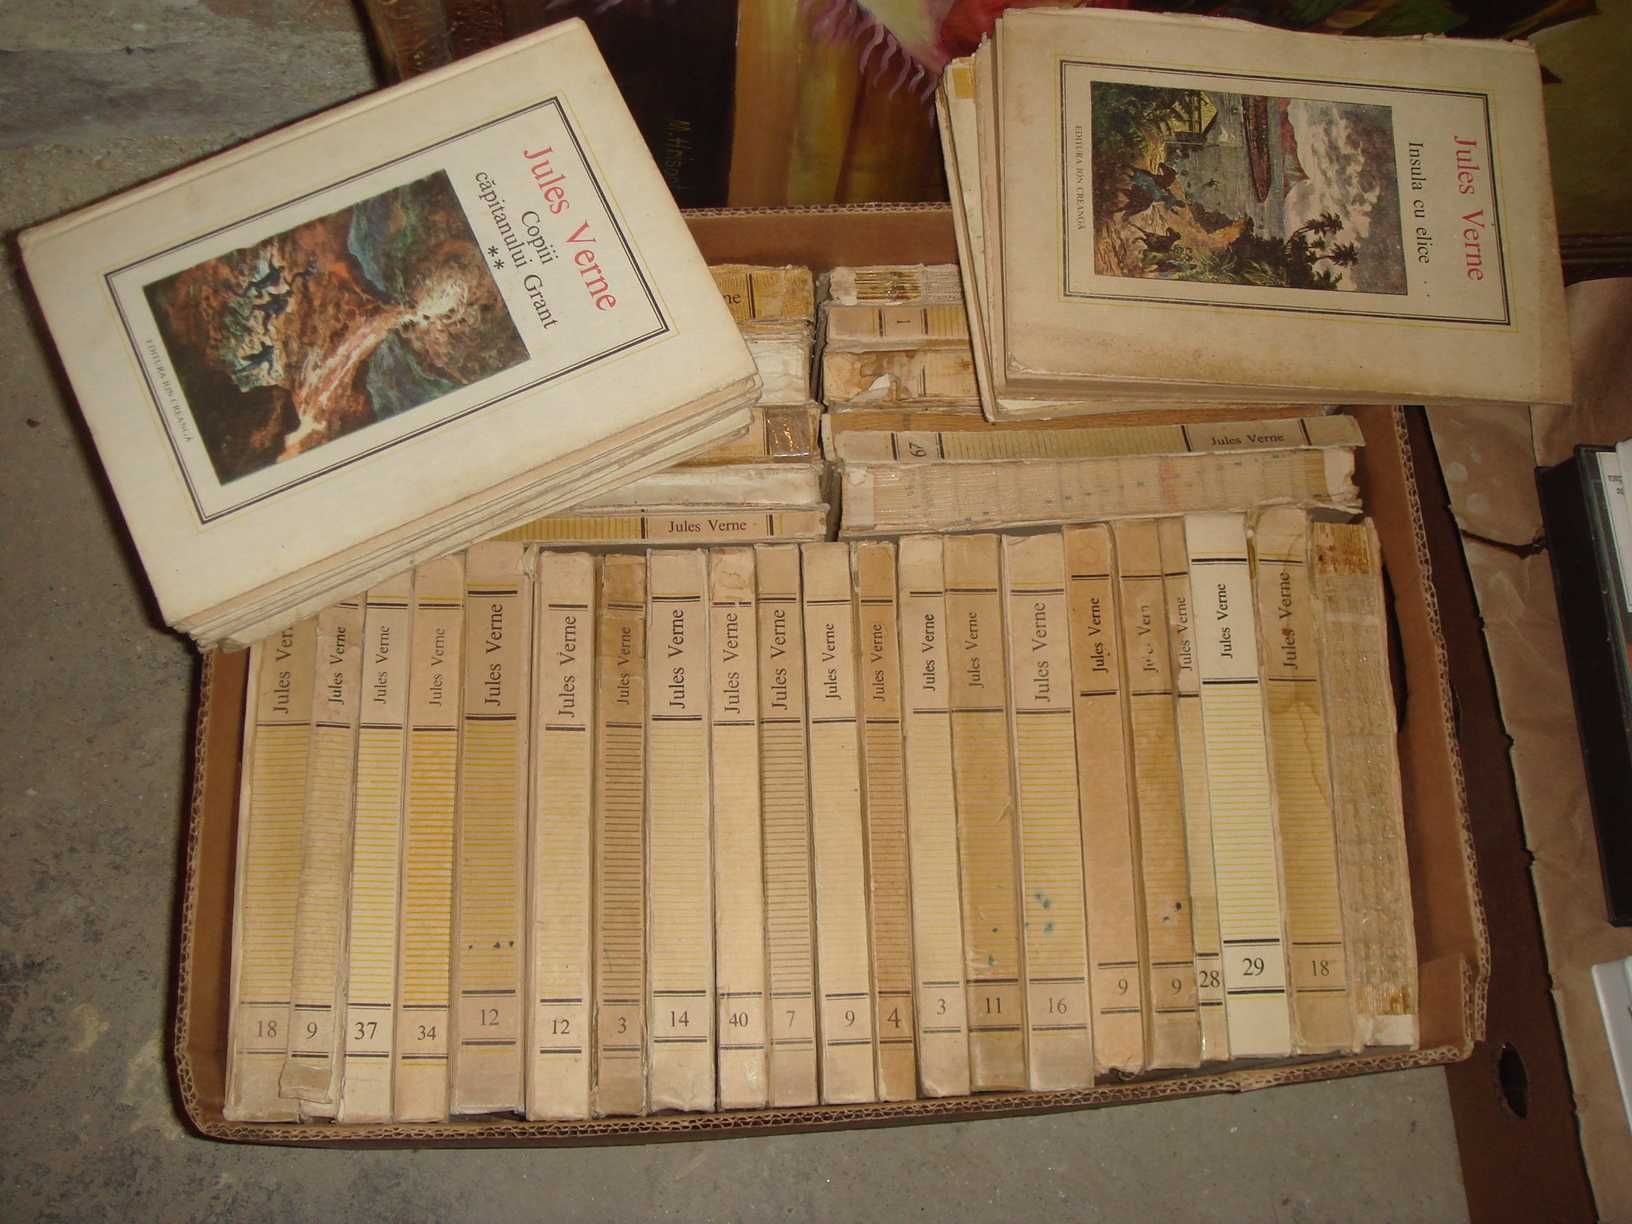 Jules Verne Ion Creanga / Adevarul Colectia de Carti Toate numerele